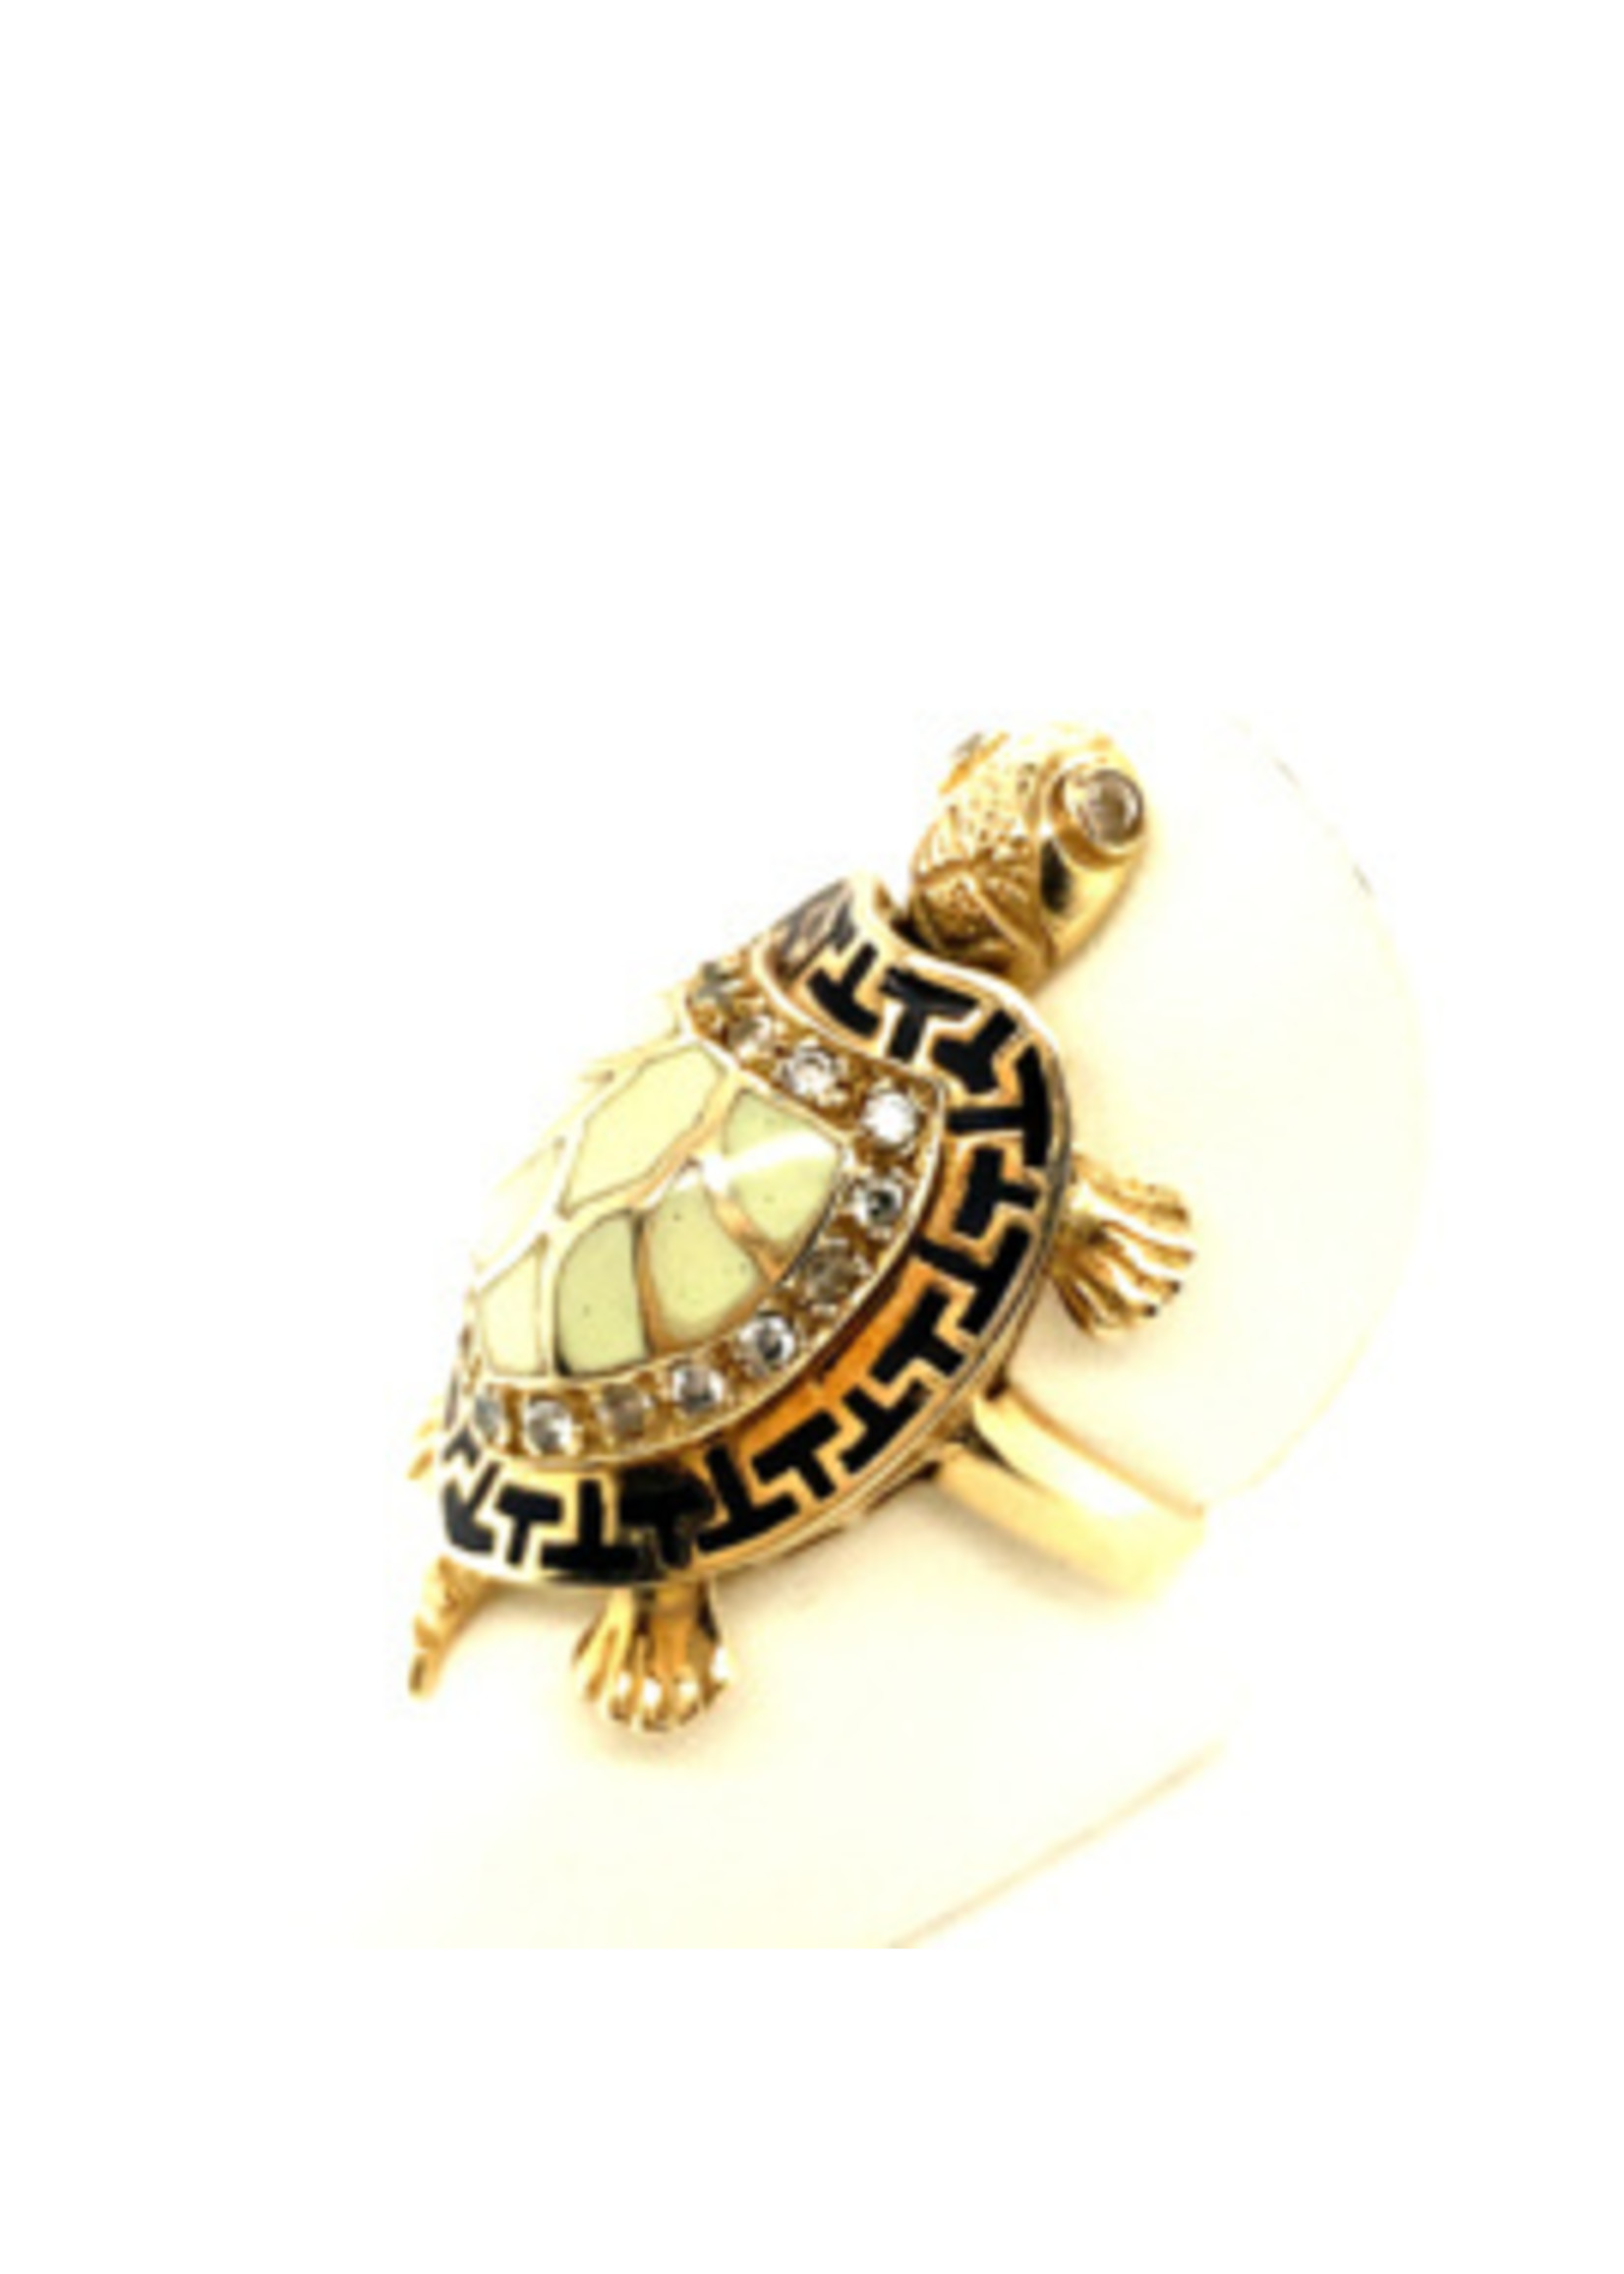 Vintage & Occasion Occasion unieke gouden ring met schildpad